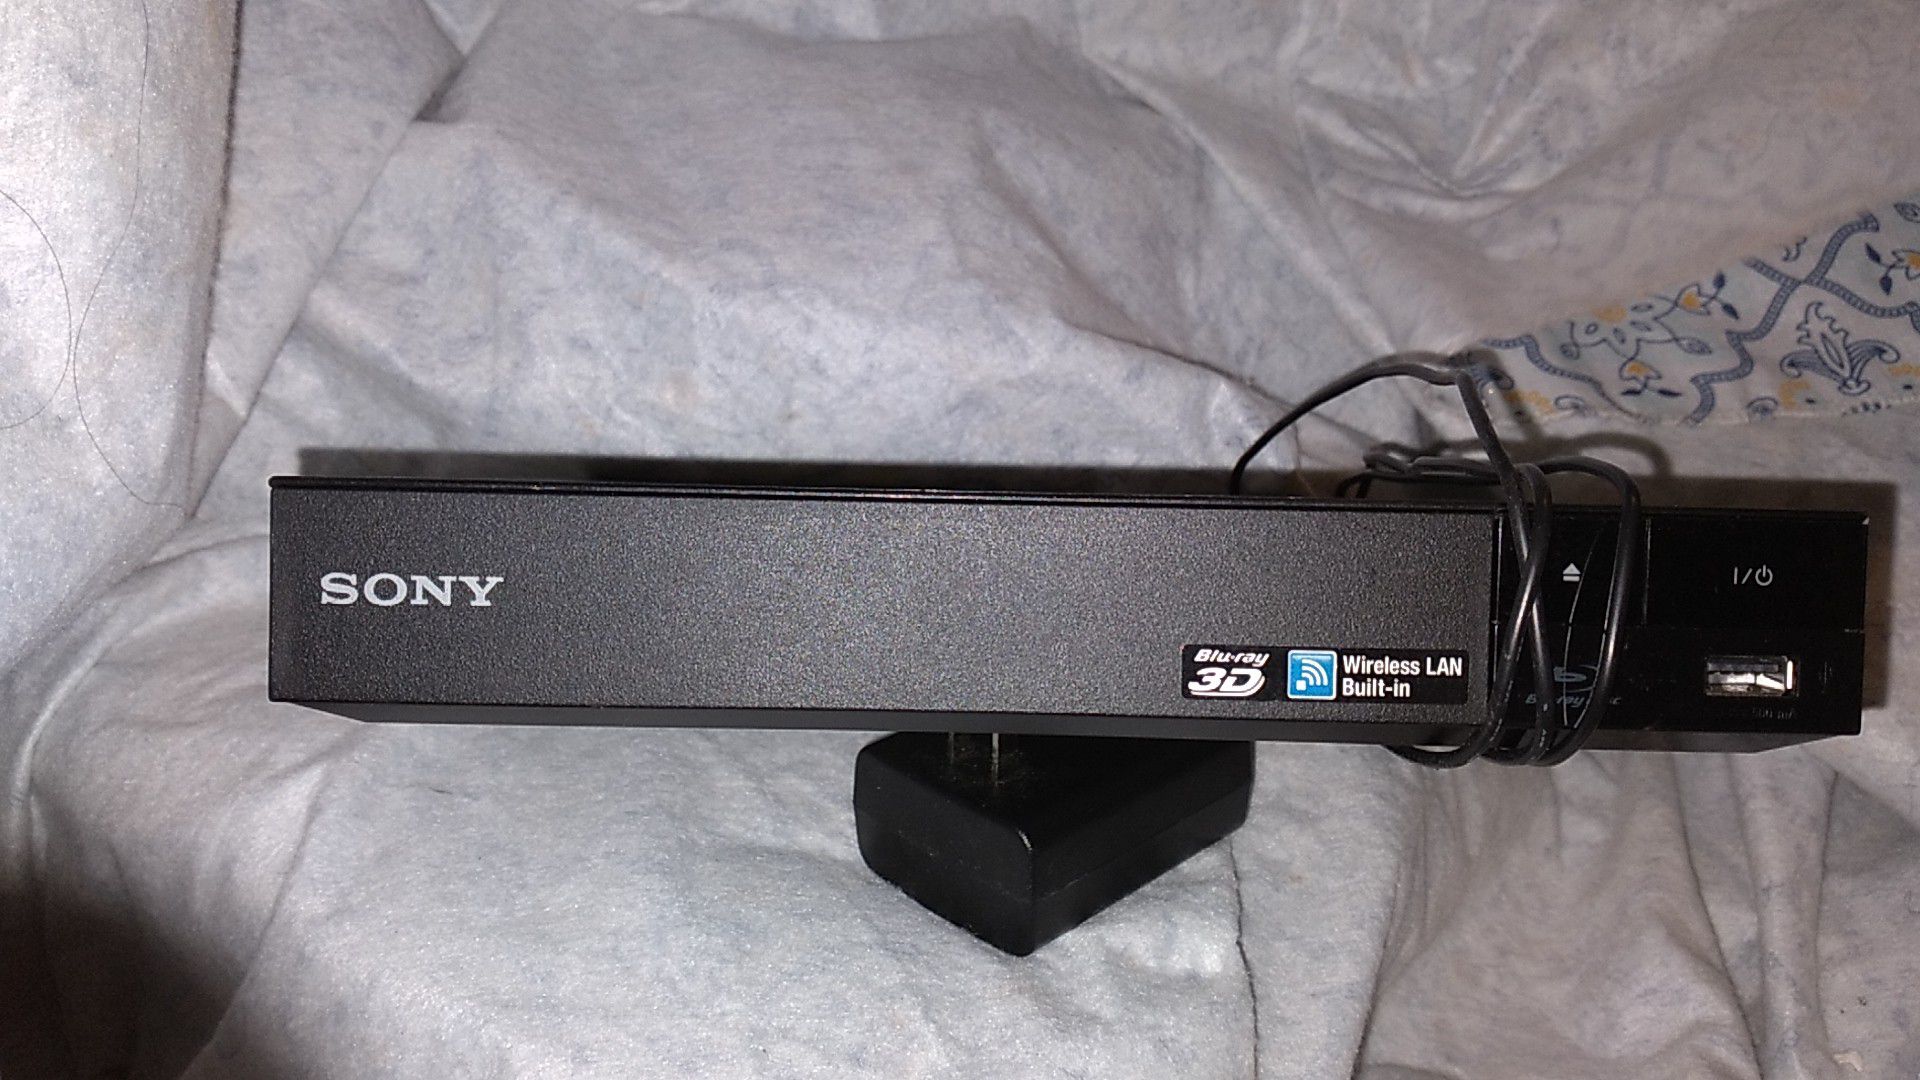 Sony Blu-ray 3D wireless LAN BUILT-IN